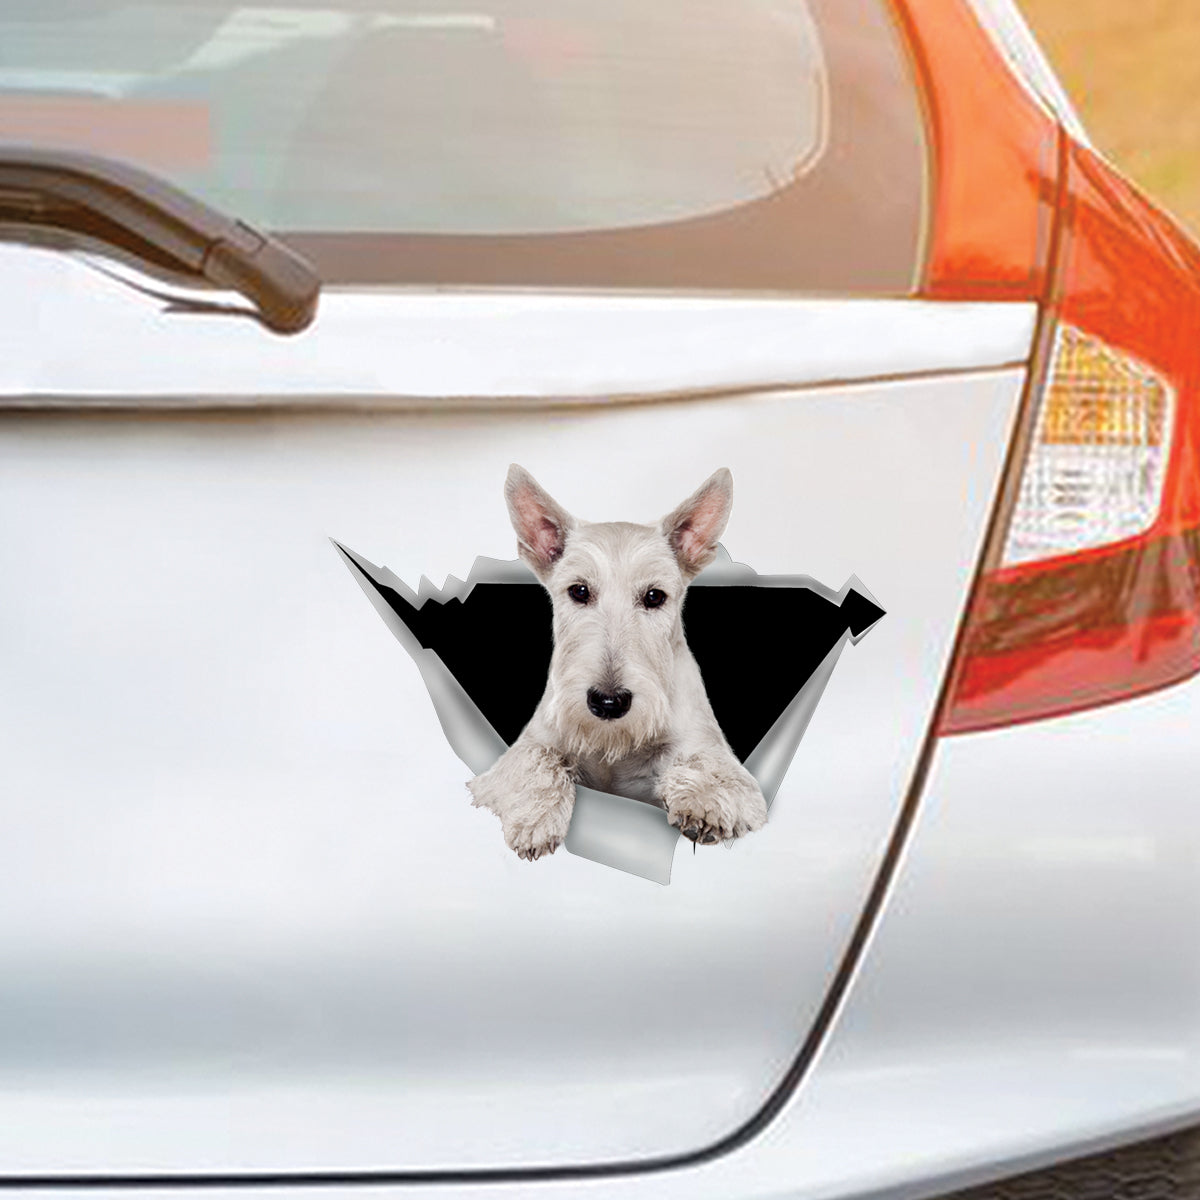 We Like Riding In Cars - Scottish Terrier Car/ Door/ Fridge/ Laptop Sticker V2